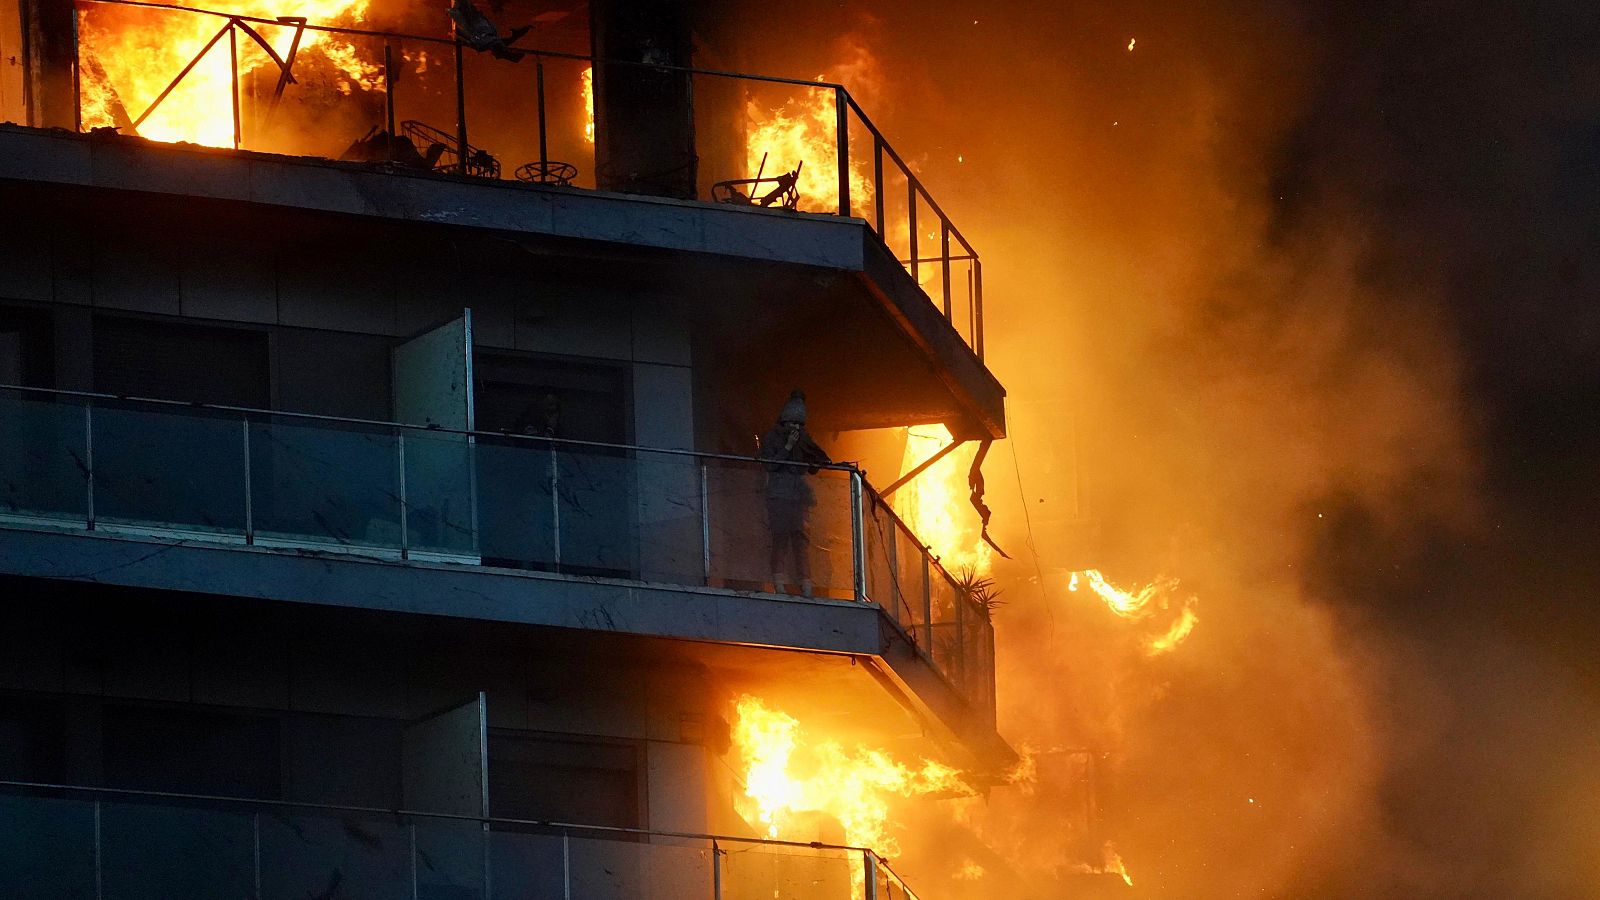 Presidenta Asociación de Peritaje de Valencia: "Se ha quemado tan rápido por el material de la fachada y el acabado"